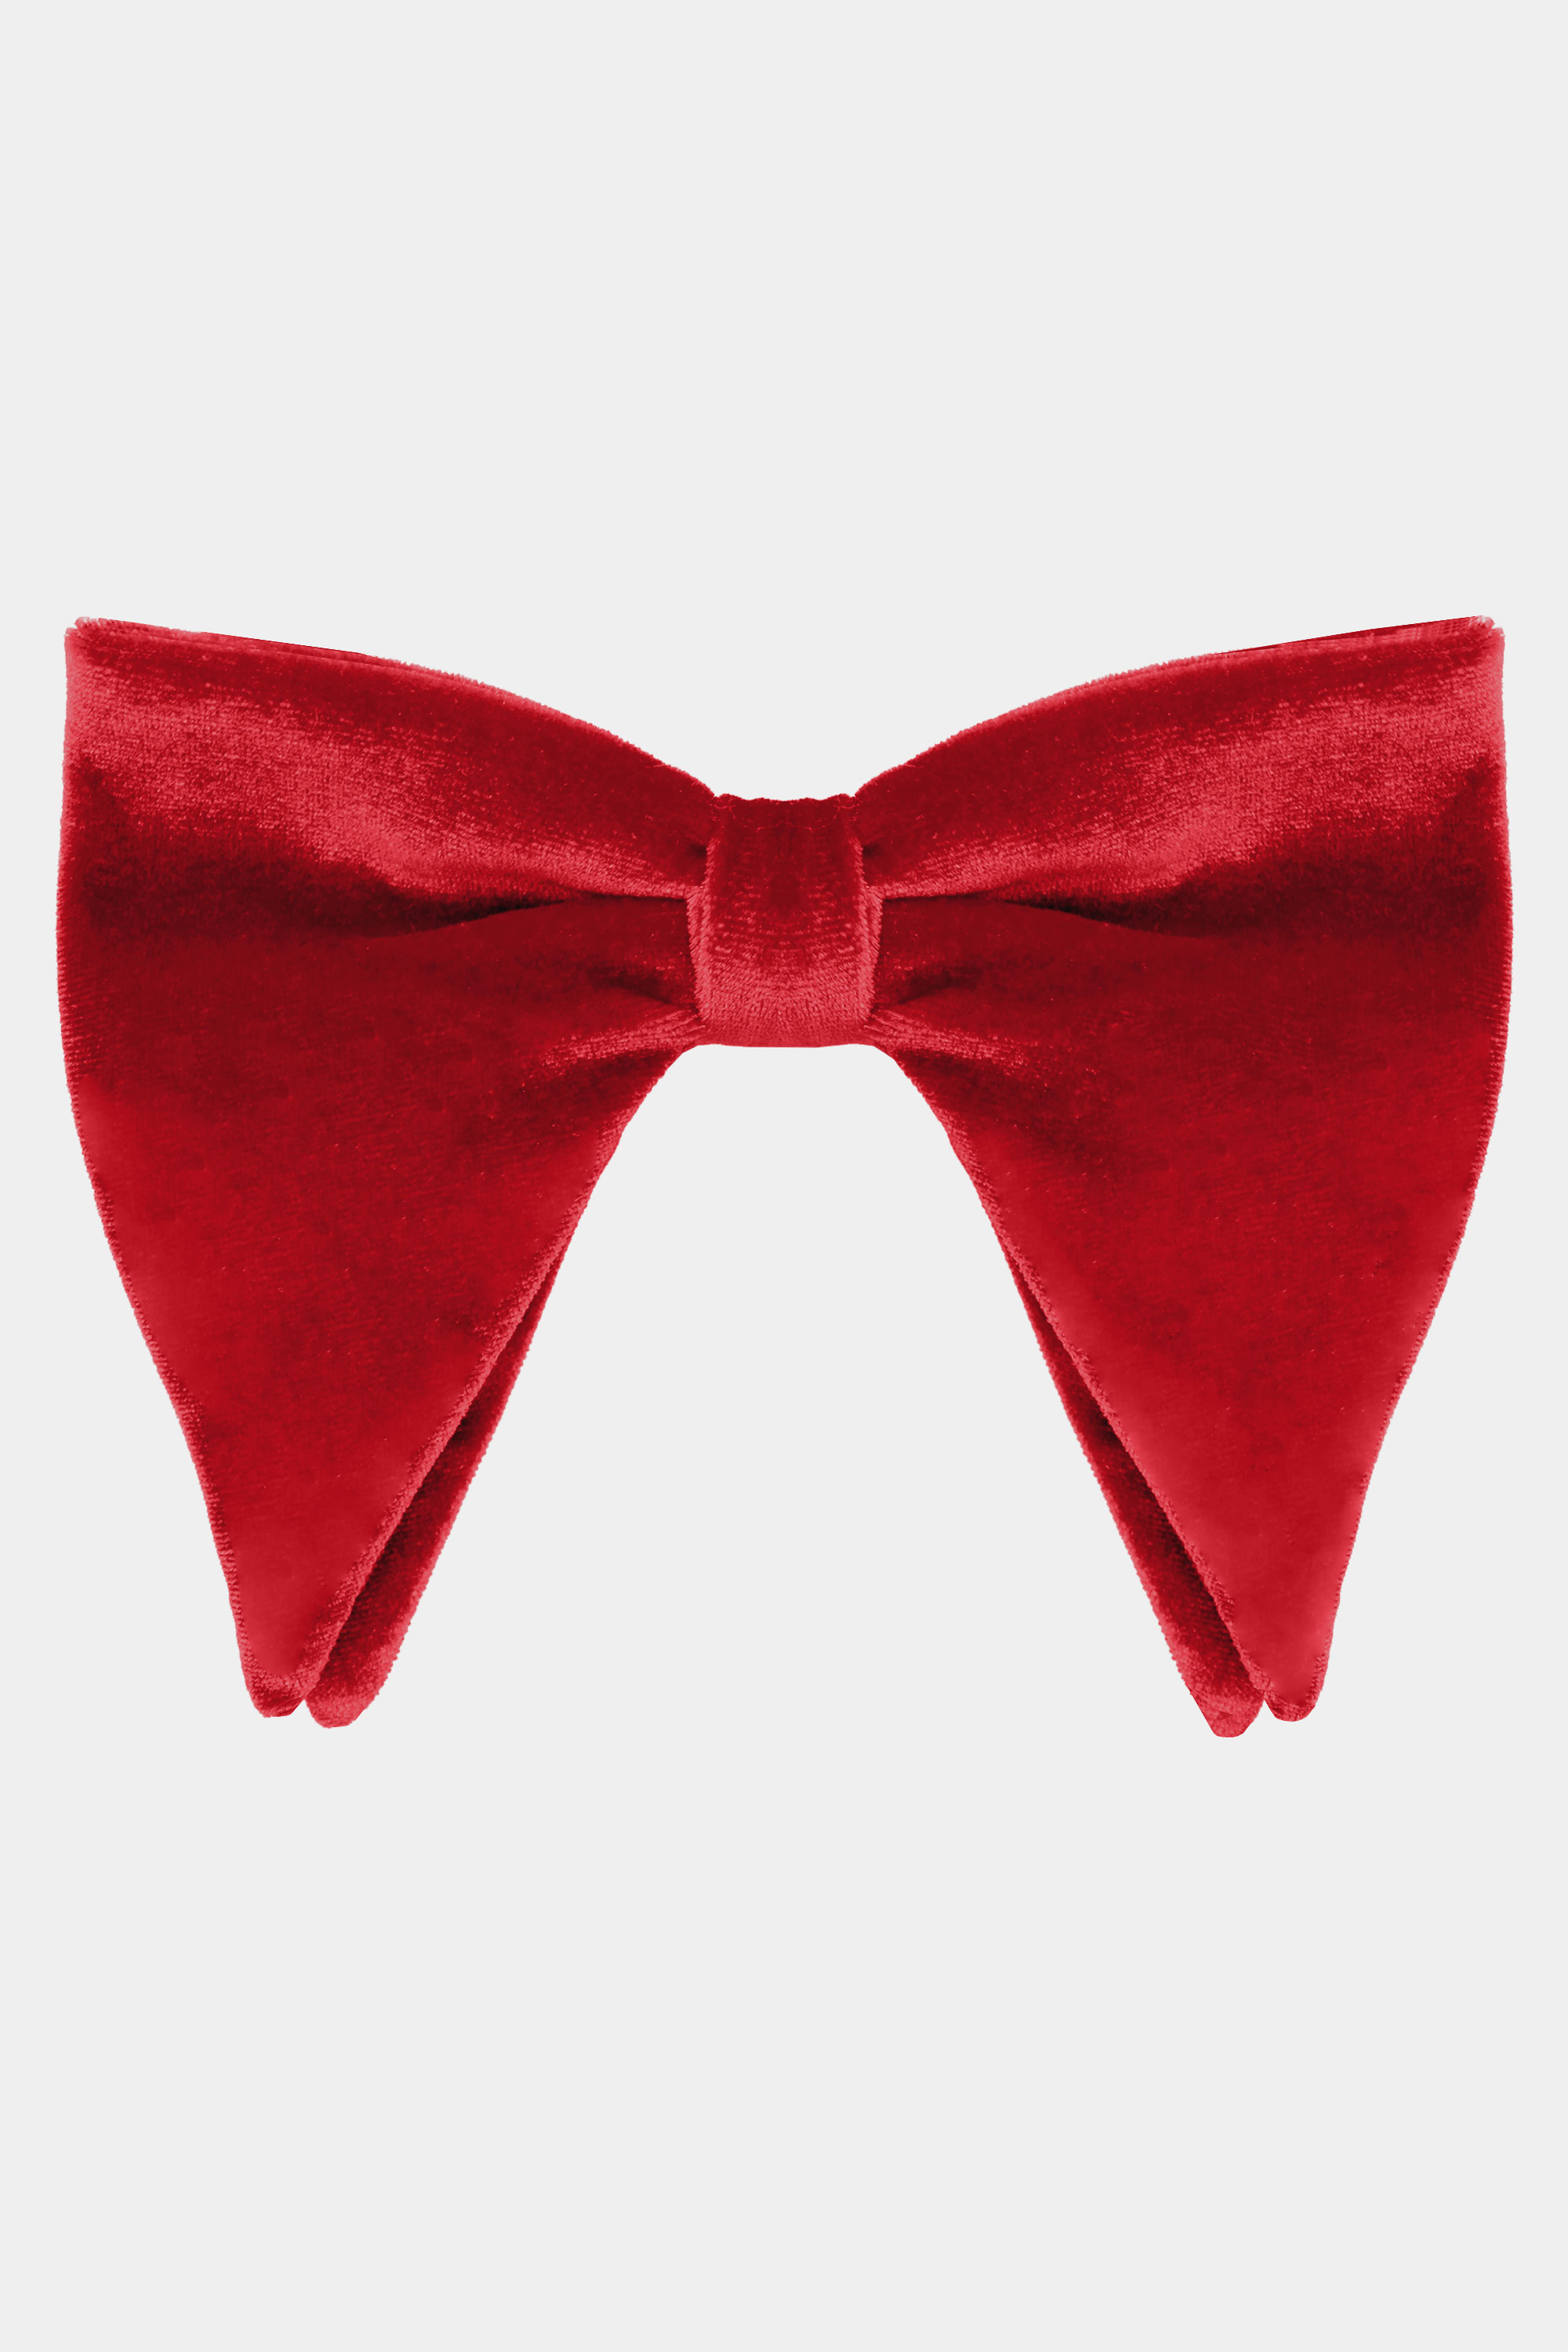 Mens-Oversized-Red-Bow-Tie-Groom-Wedding-Tuxedo-Butterfy-BowTie-from-Gentlemansguru.com